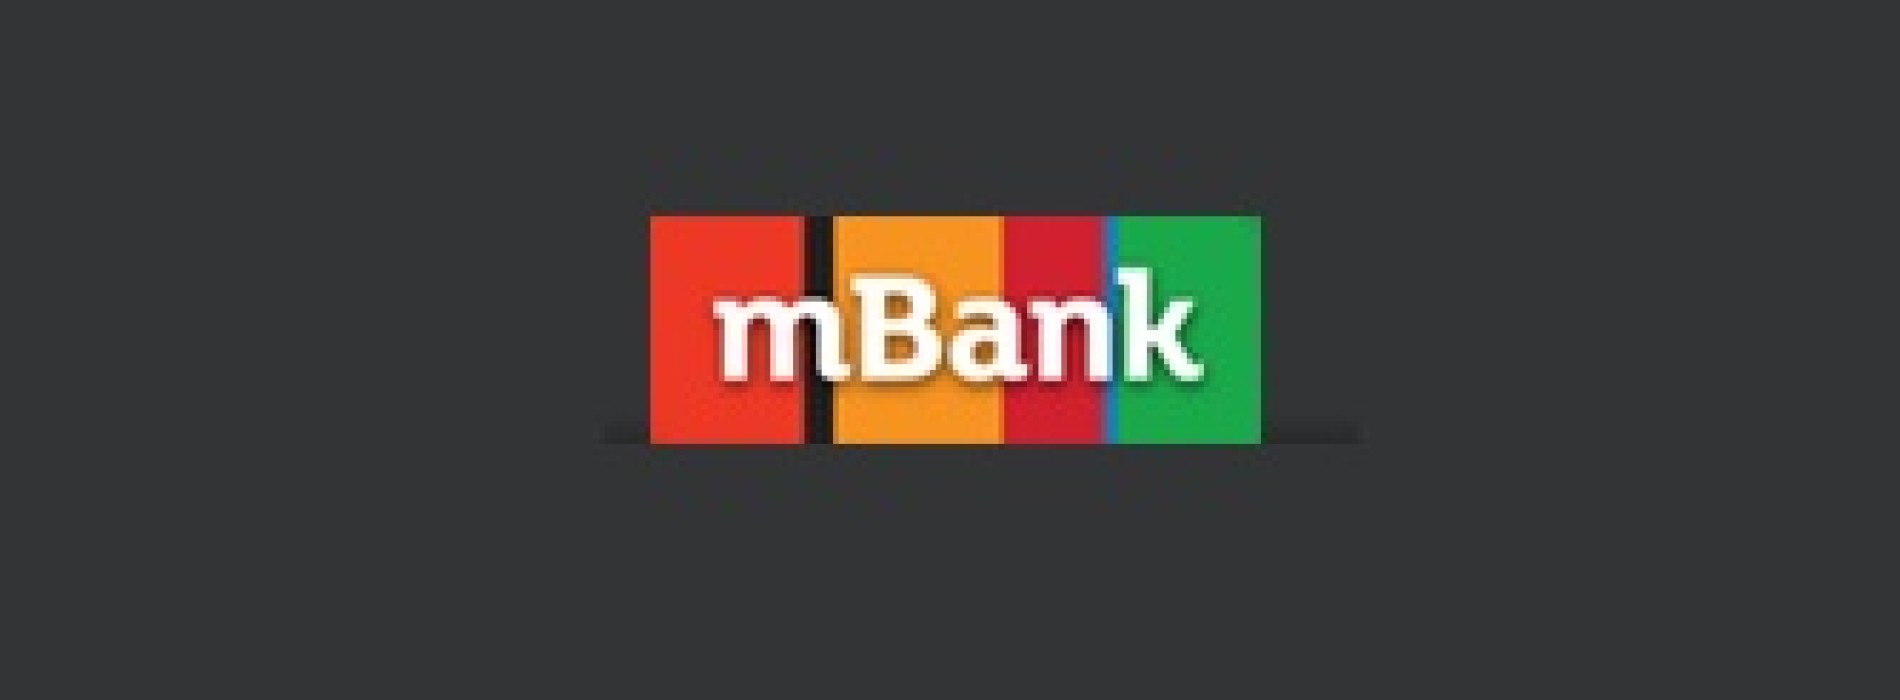 Stabilne wyniki mBanku w IV kwartale 2014